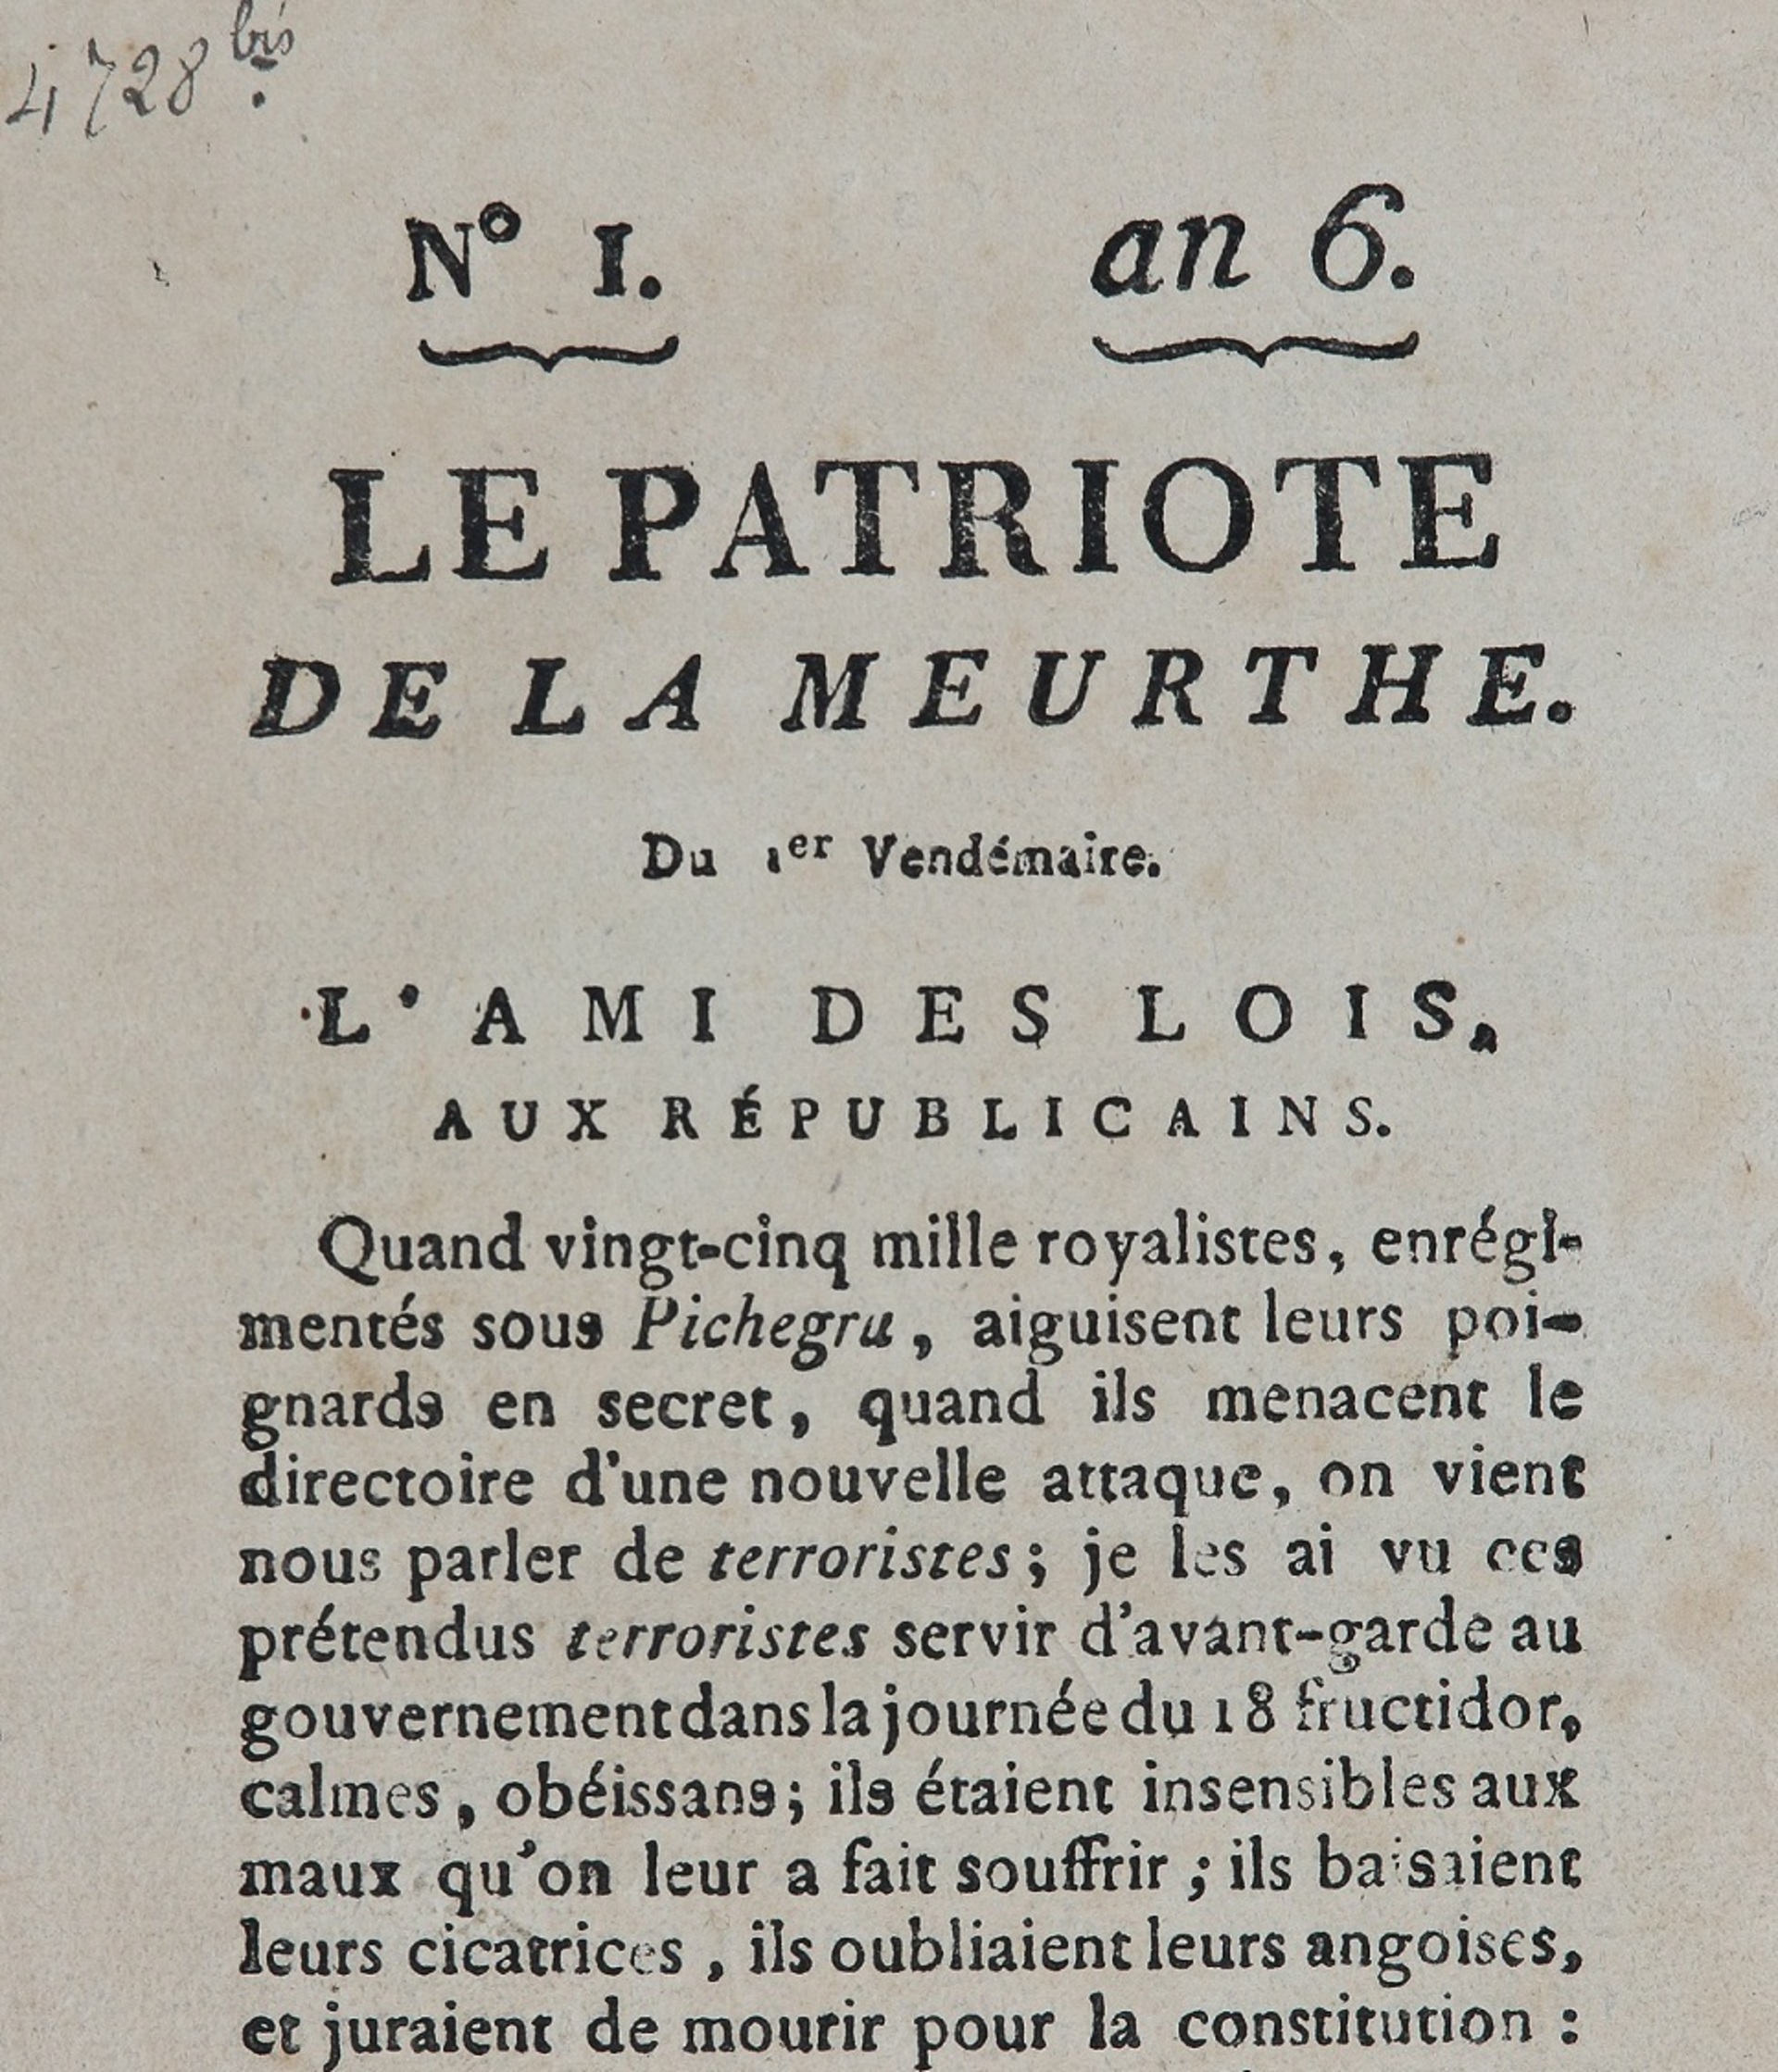 Le Journal de la Meurthe et des Vosges